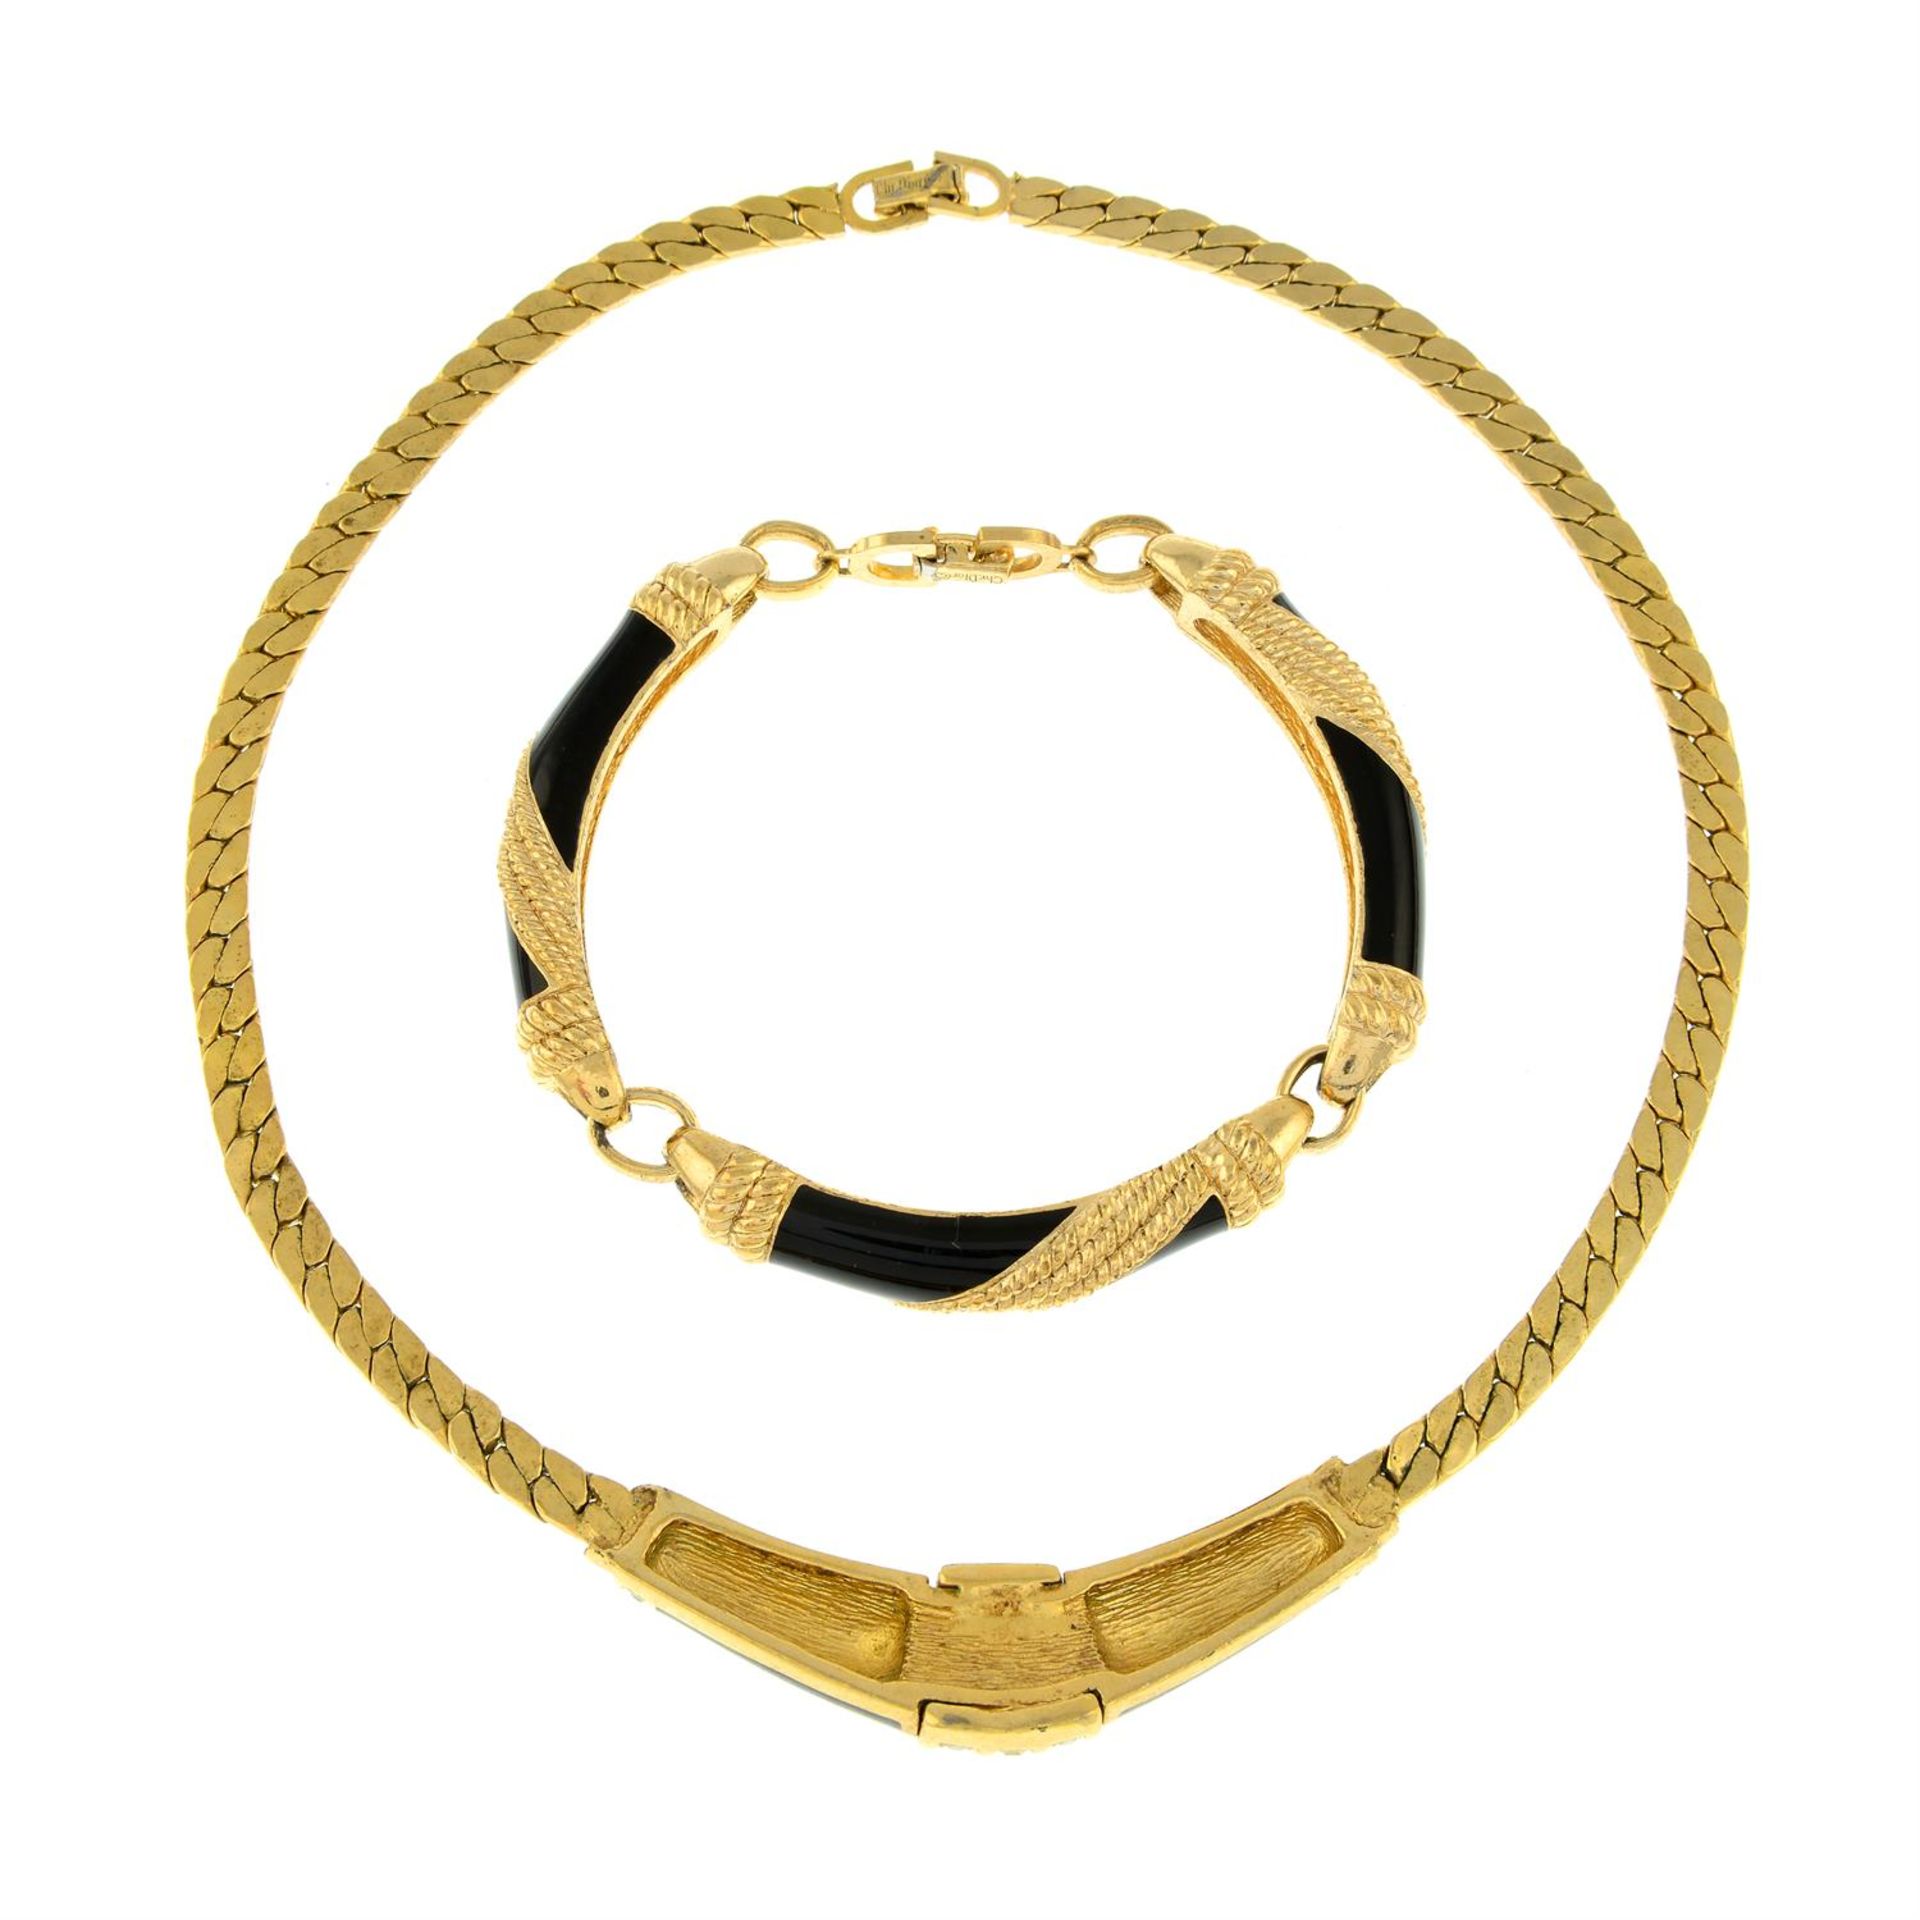 CHRISTIAN DIOR - a black enamel and paste set necklace, together with a similar bracelet. - Bild 2 aus 2